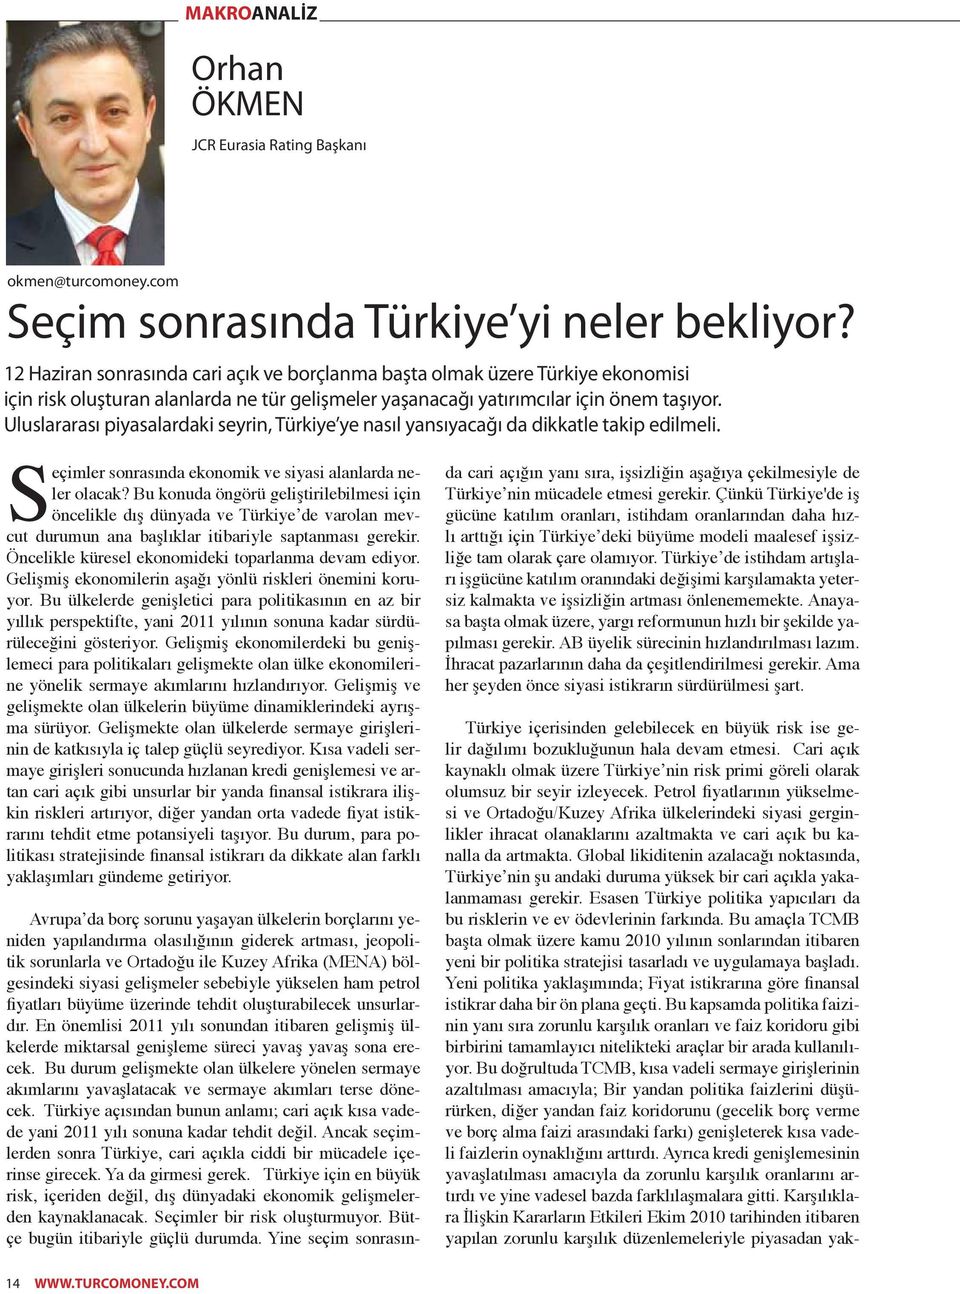 Uluslararası piyasalardaki seyrin, Türkiye ye nasıl yansıyacağı da dikkatle takip edilmeli. Seçimler sonrasında ekonomik ve siyasi alanlarda neler olacak?